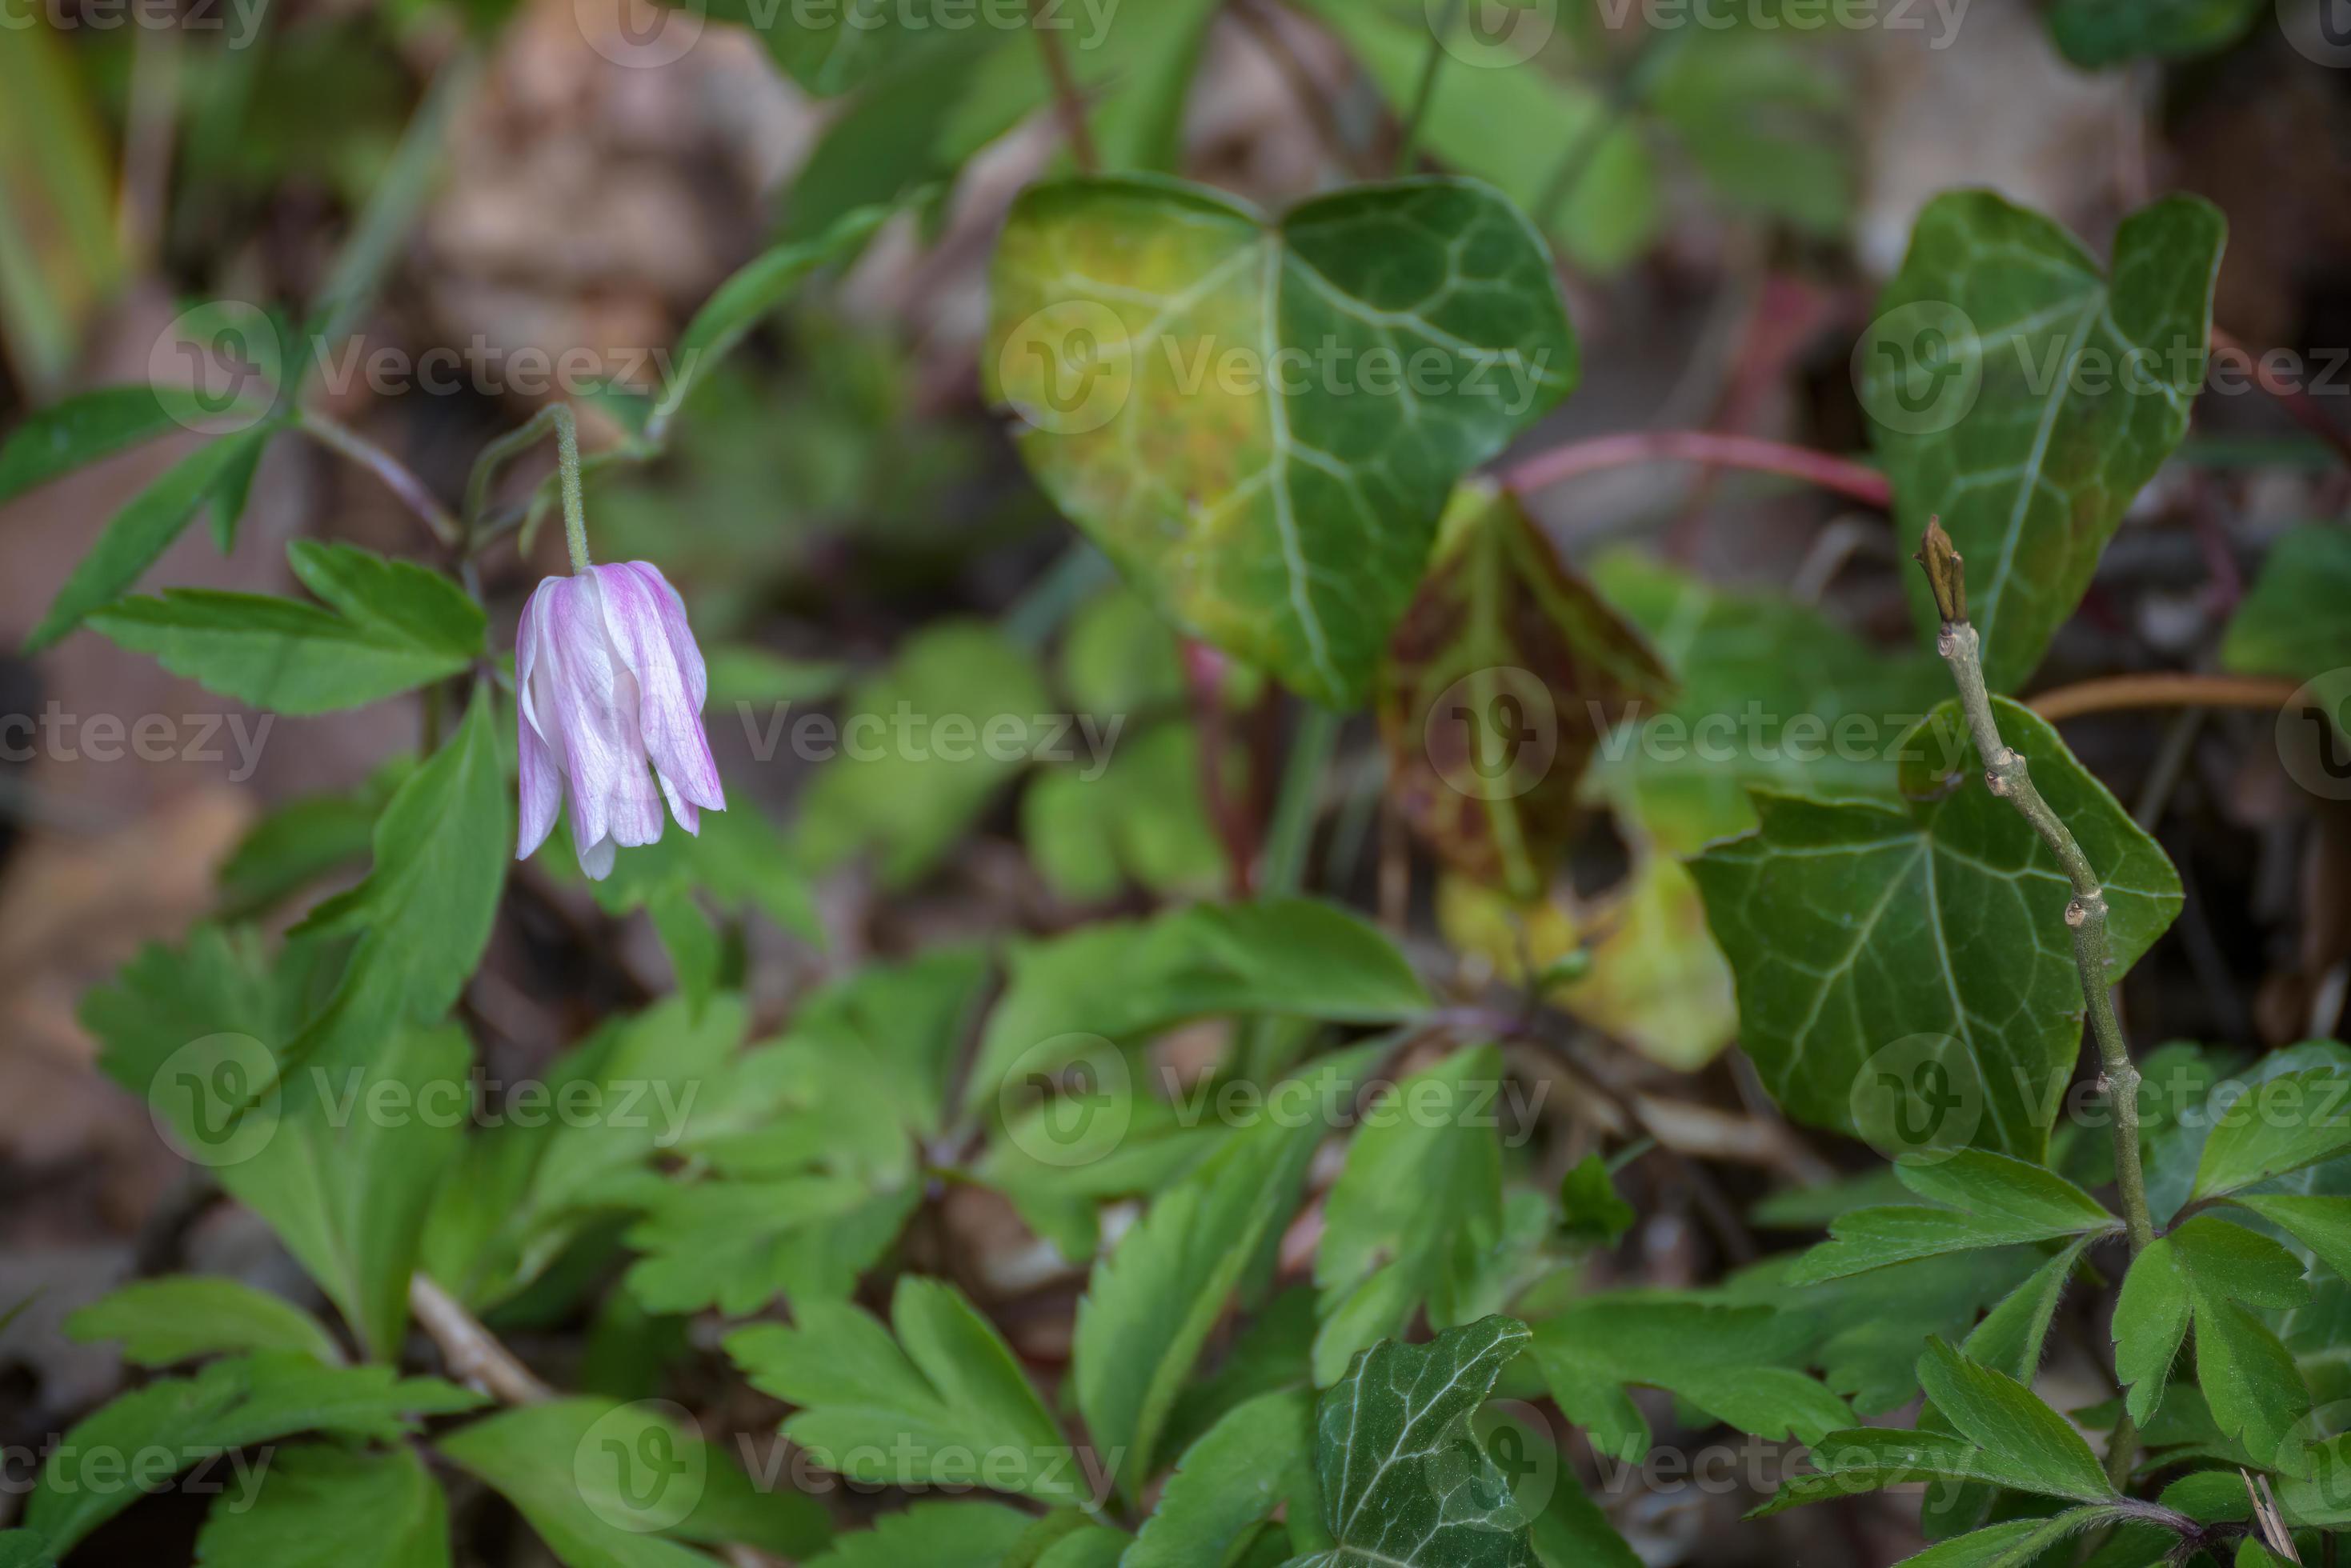 crowfoot uno dei primi fiori selvatici ad emergere in primavera foto